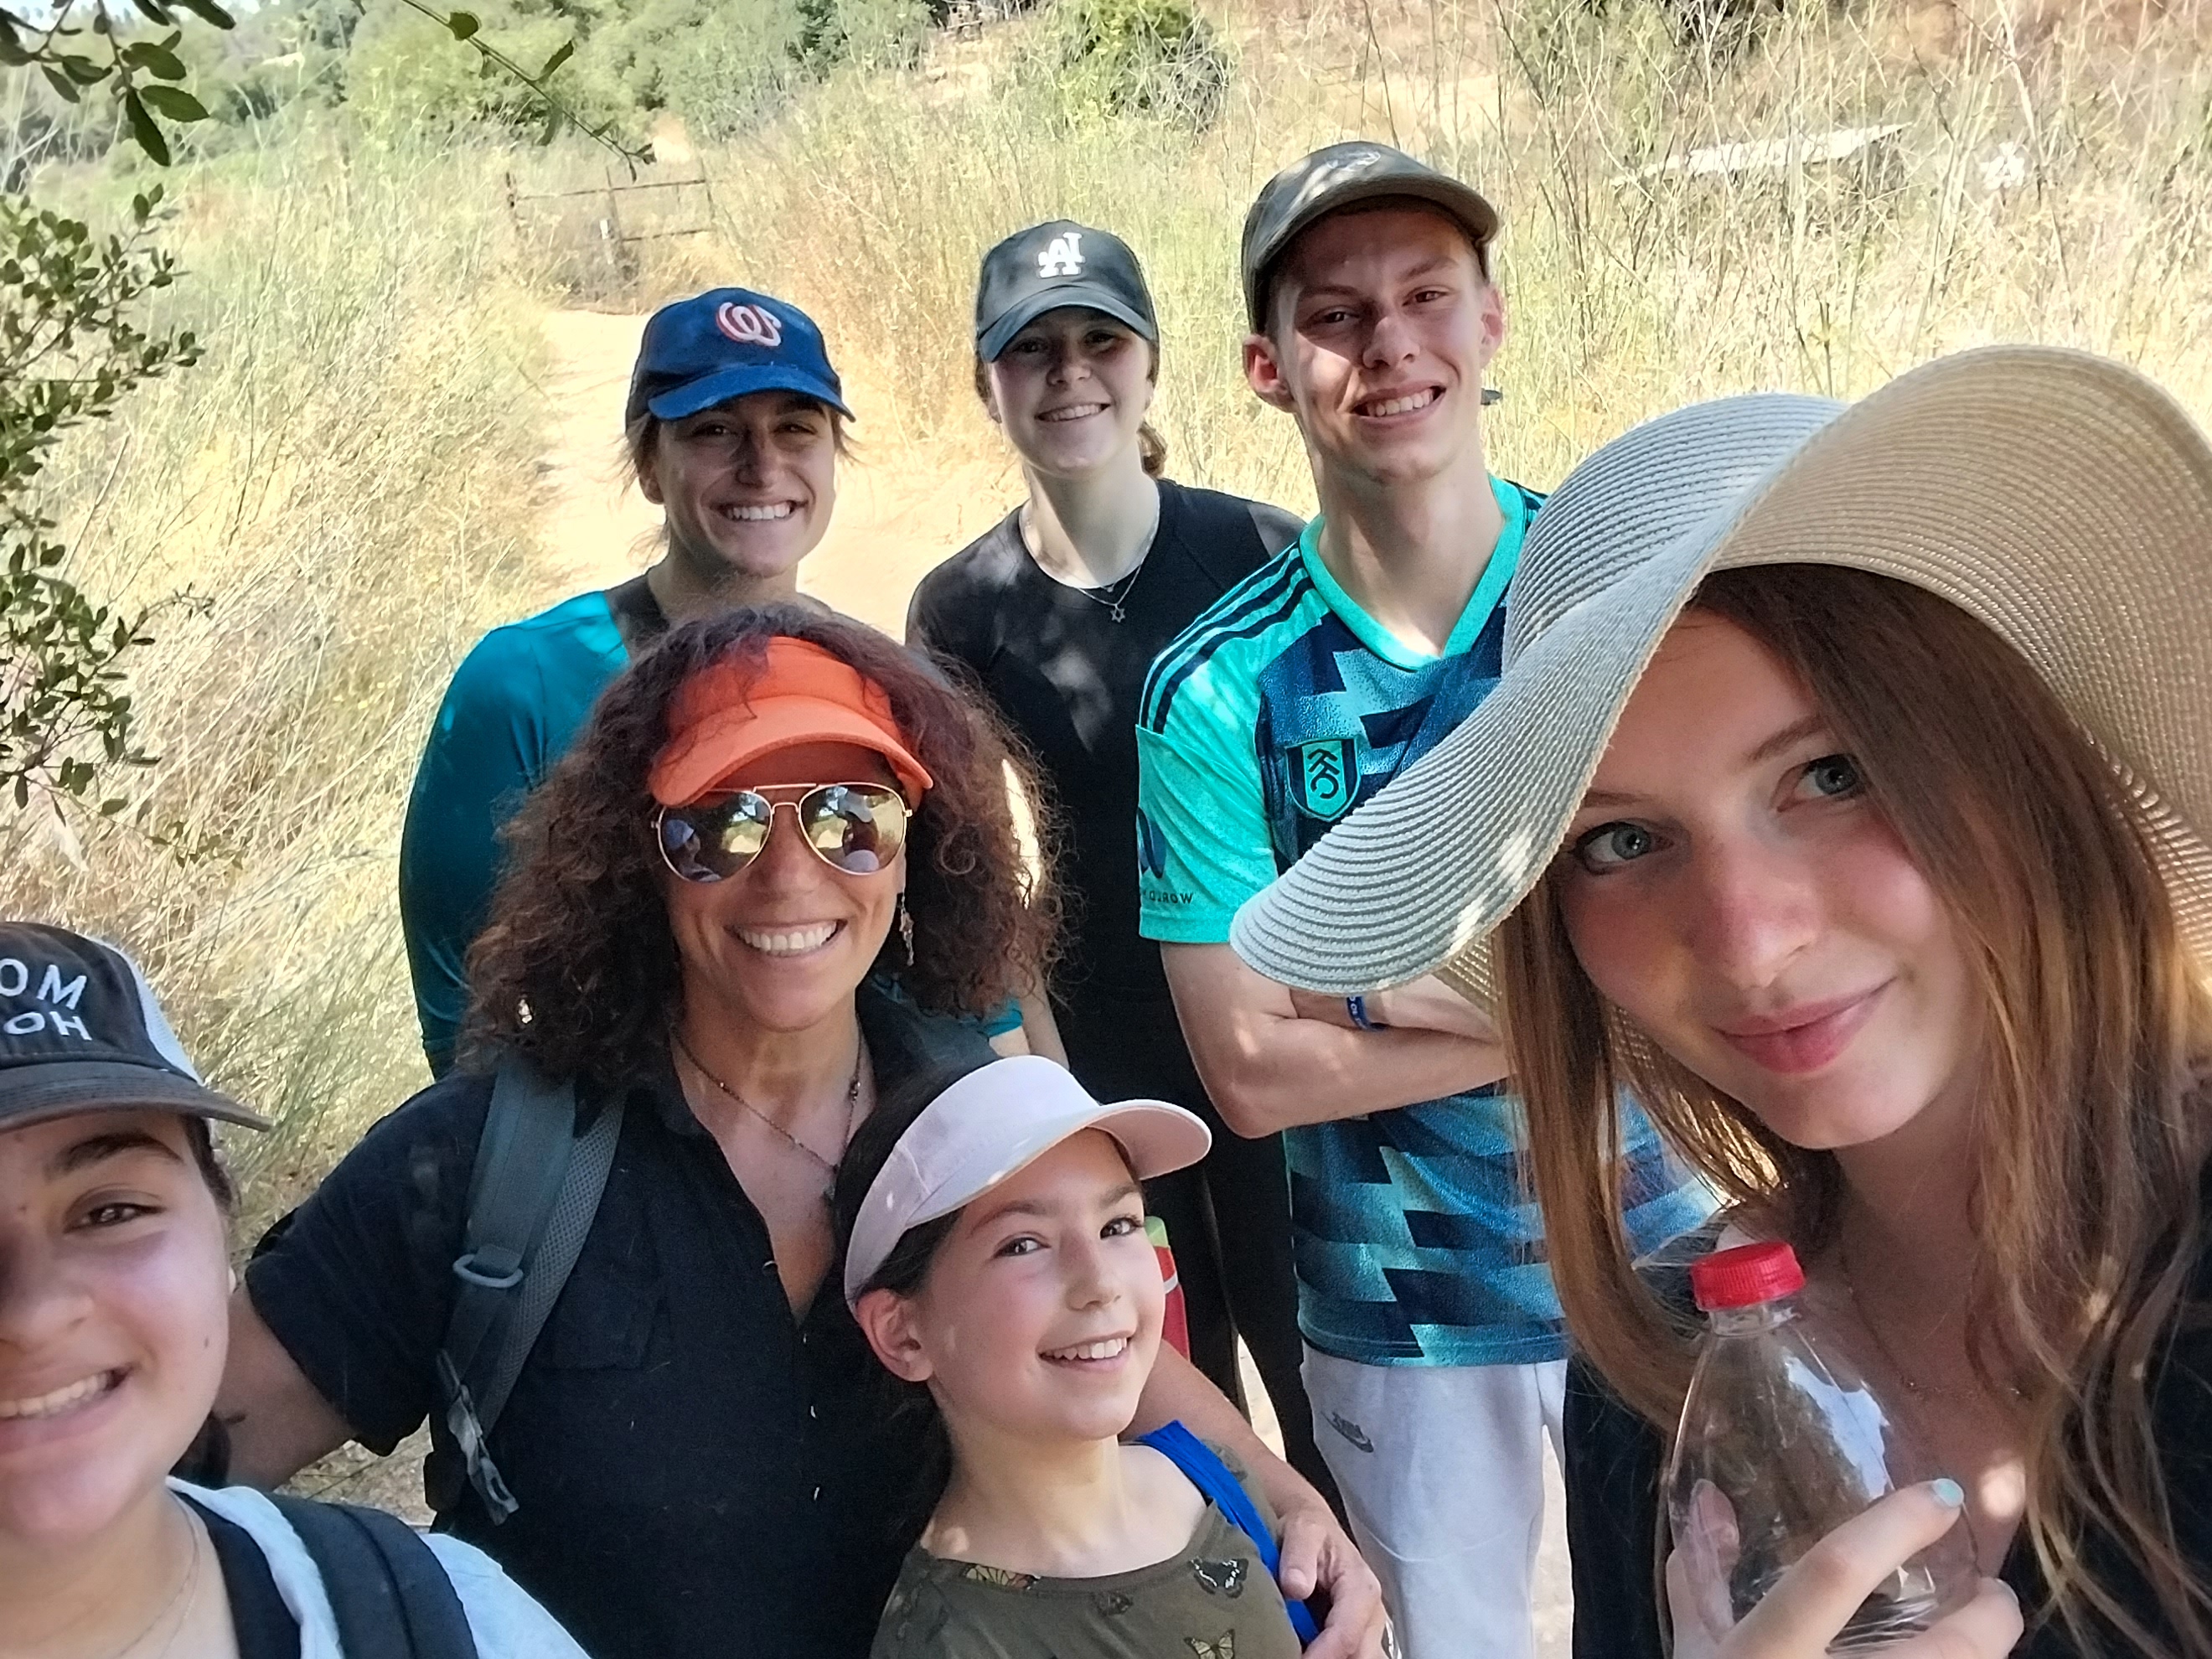 A trip through the Judaean mountains